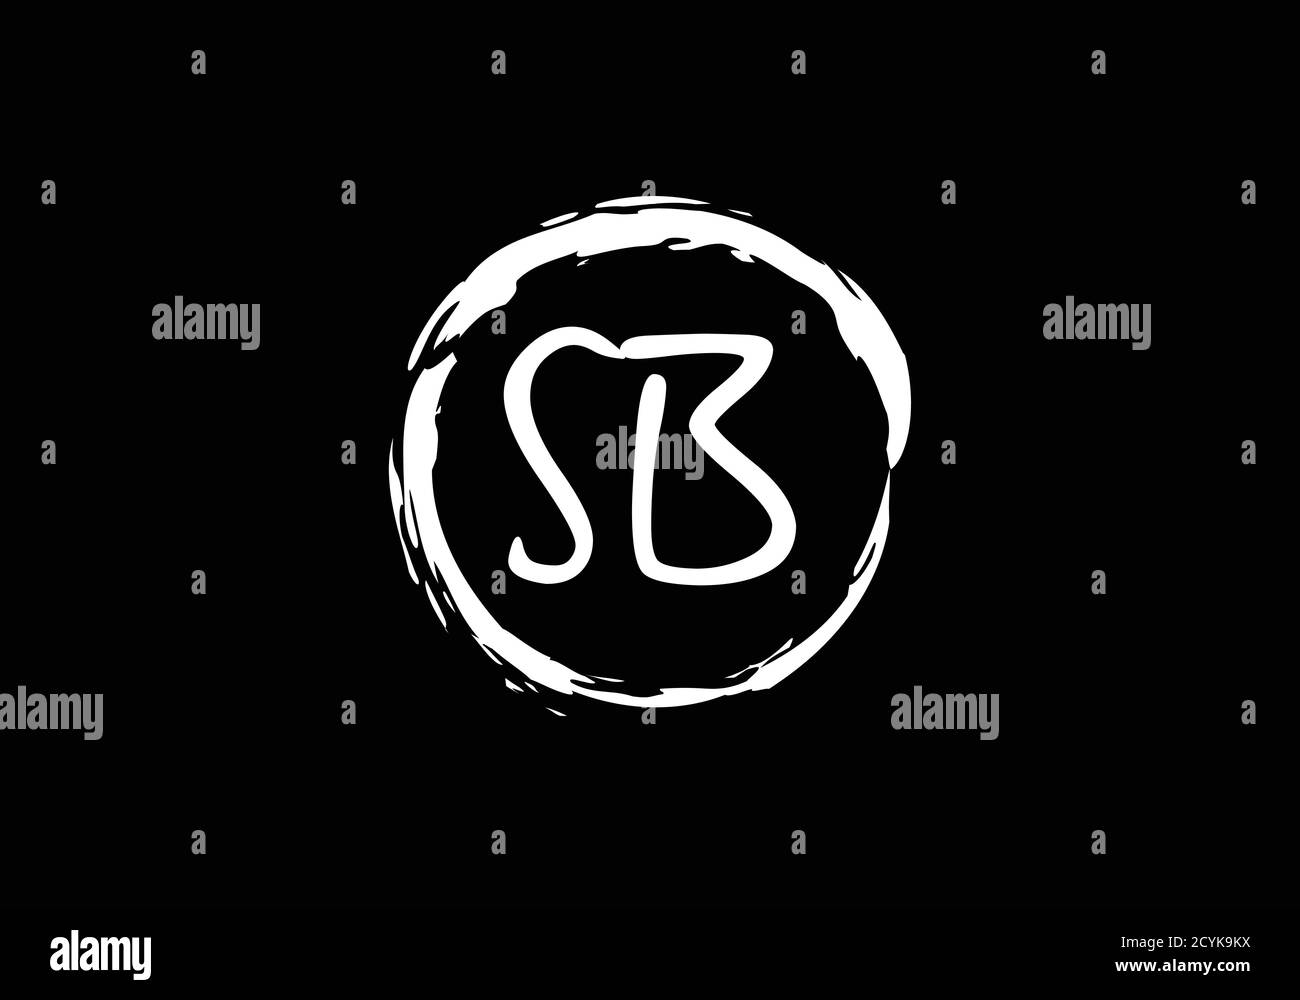 S B Initial Letter Logo Design Vector Template. S B monogram Logo. Stock Vector